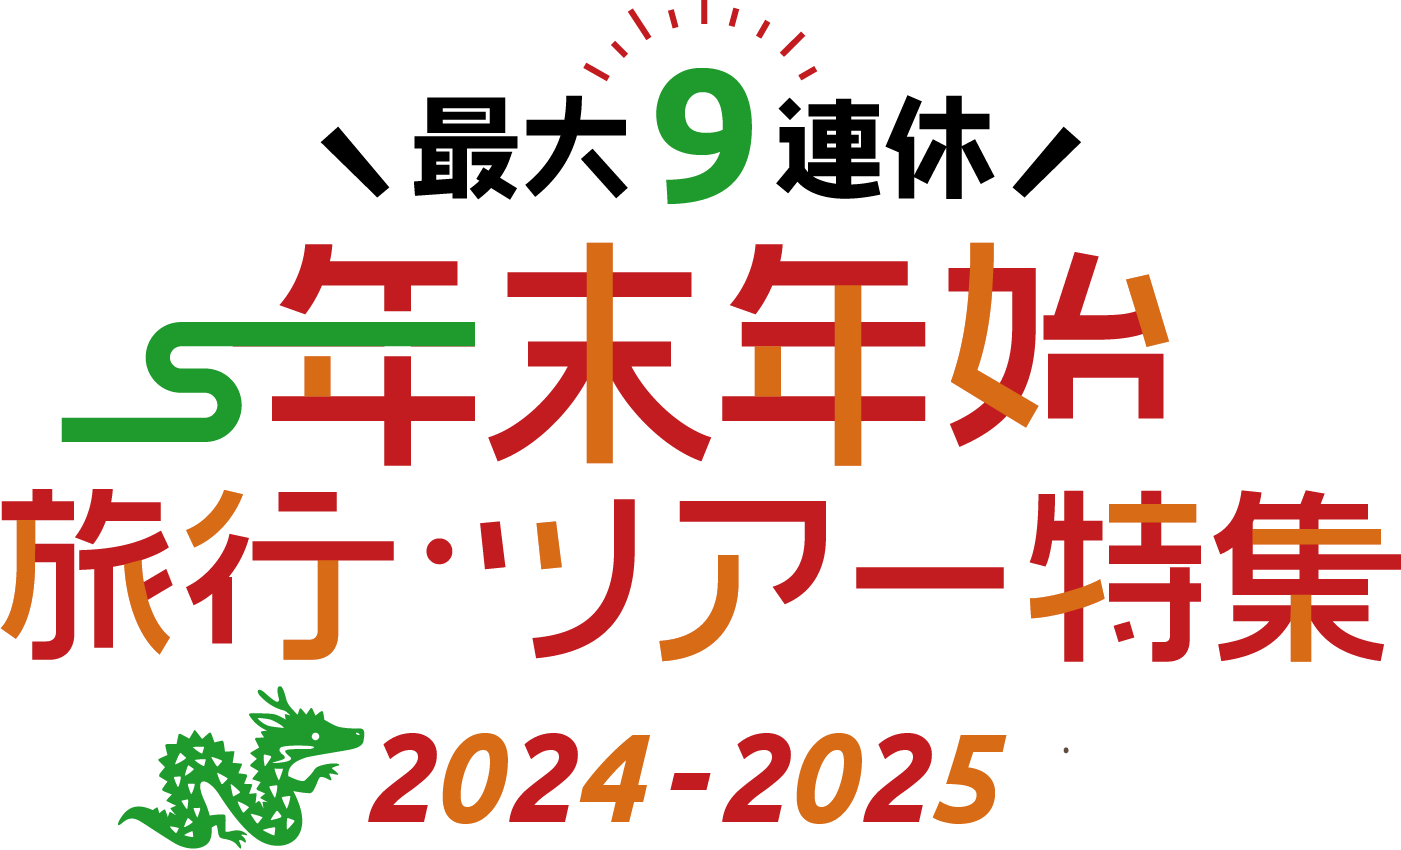 【北海道エリア】年末年始・お正月におすすめのホテル・旅館の宿泊予約 2024-2025